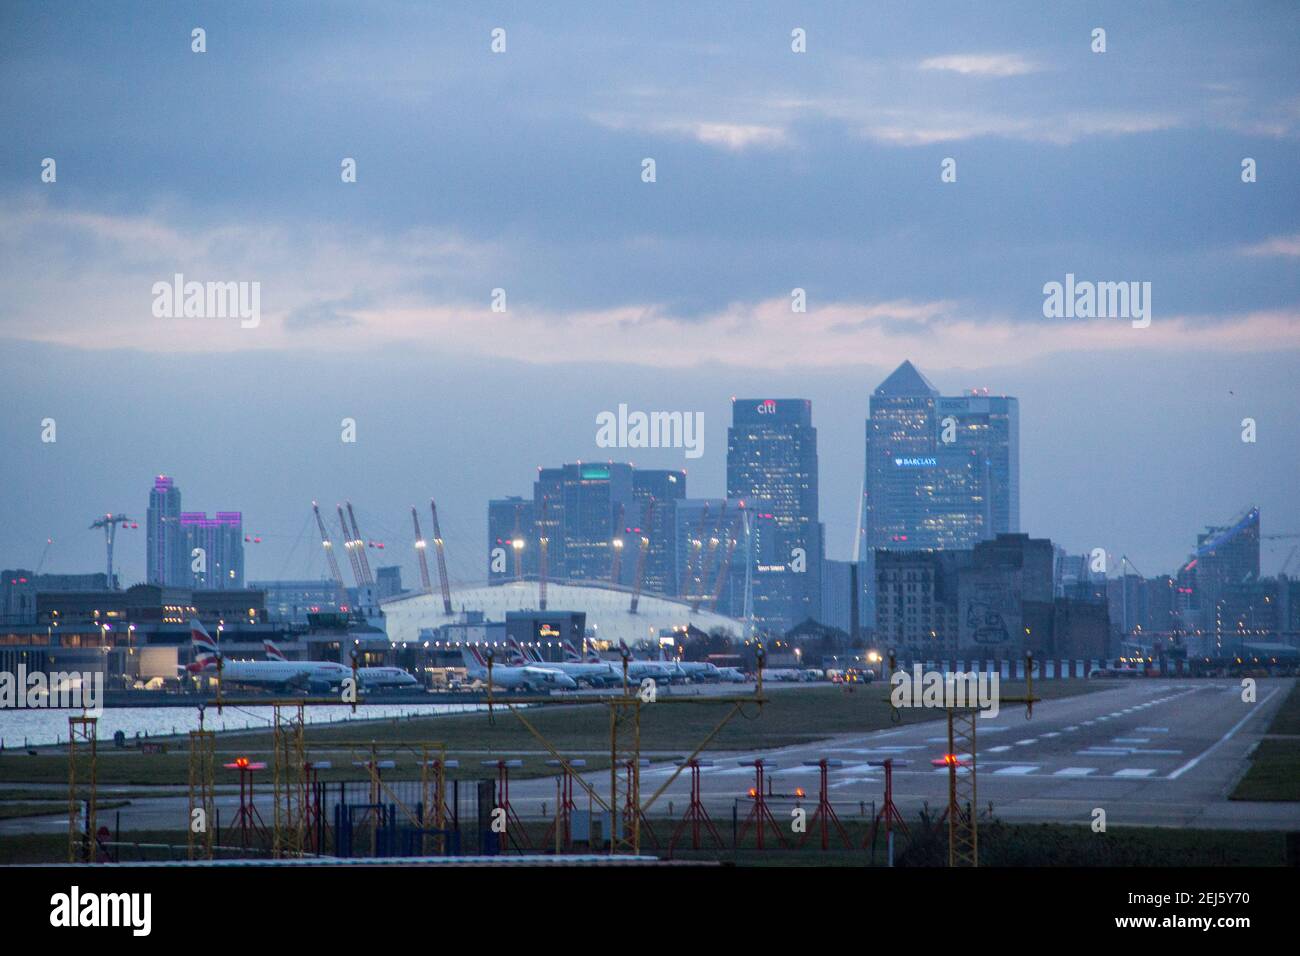 LONDRES - 2014: Aéroport de London City en direction de l'ouest vers l'O2 Arena et le quartier des affaires de Canary Wharf pendant le coucher du soleil. Banque D'Images